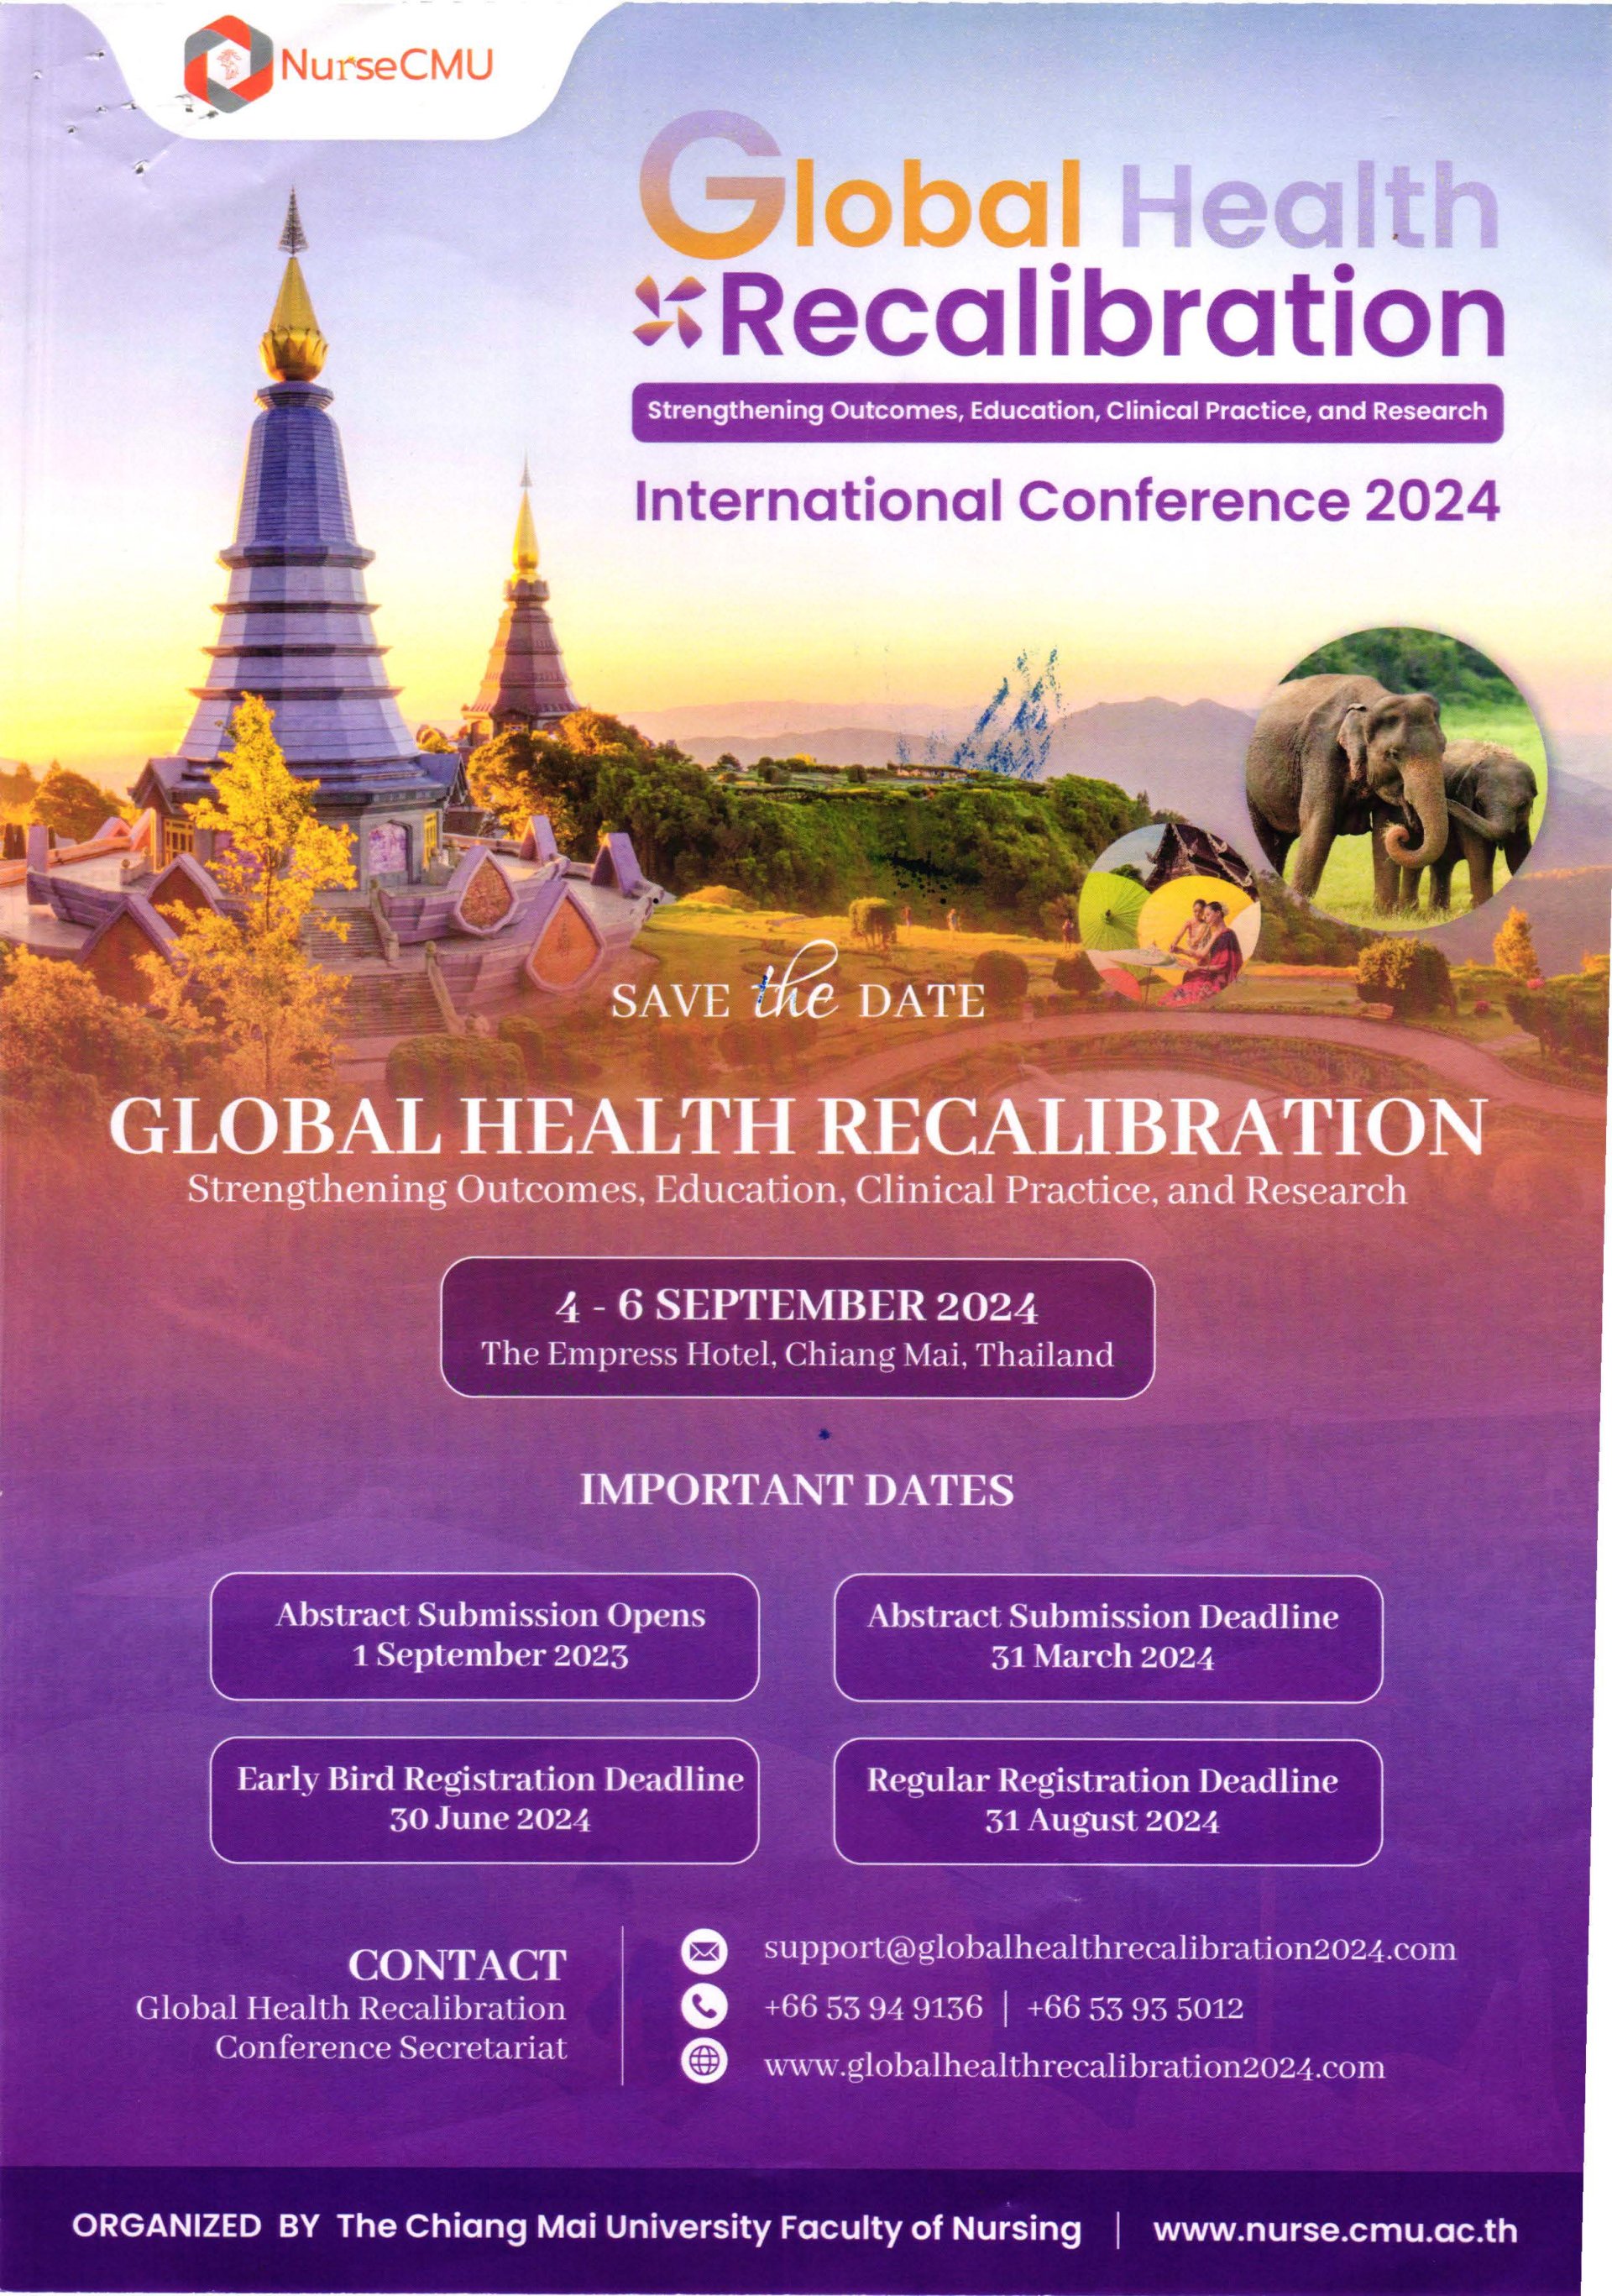 ประชาสัมพันธ์การประชุมวิชาการนานาชาติ Global Health Recalibration 2024 